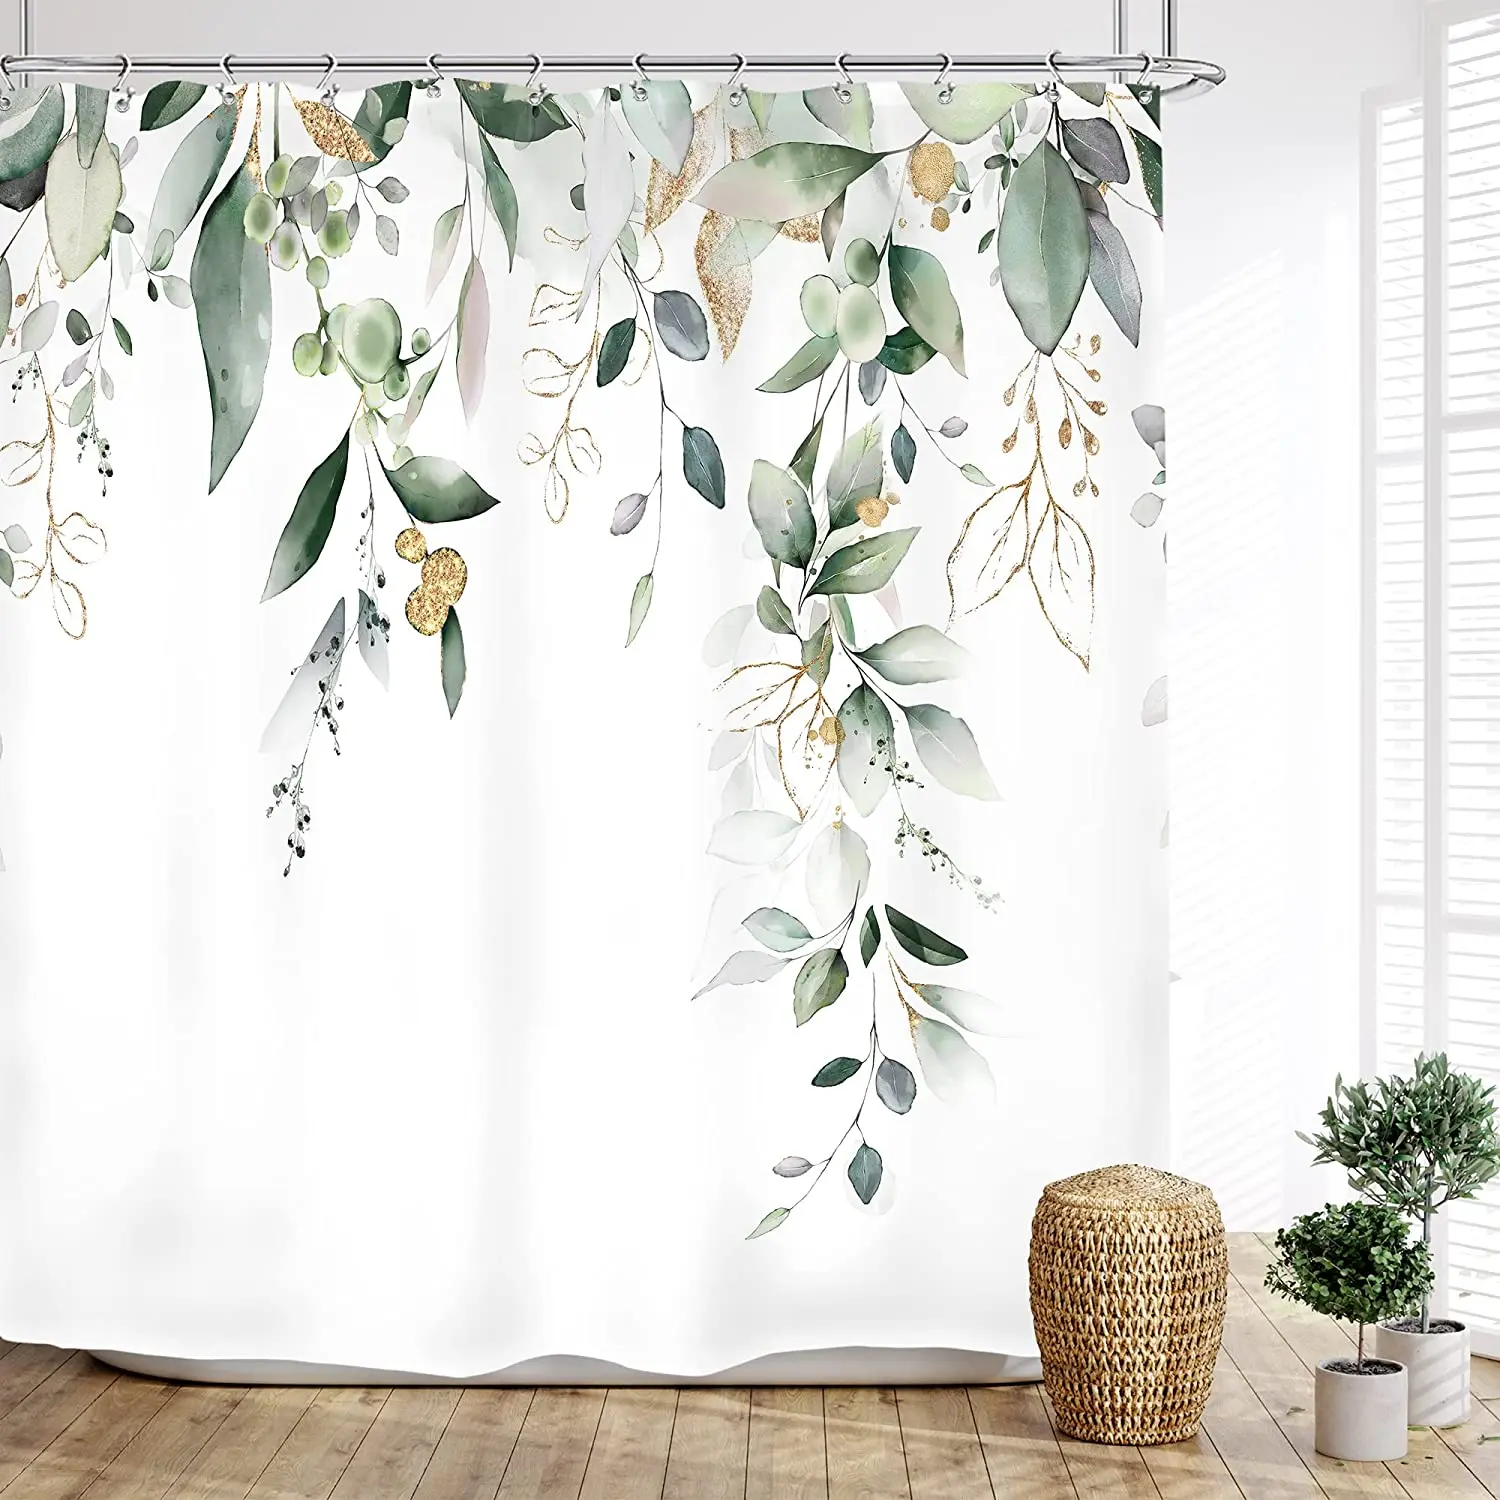 

Занавеска для душа с зелеными листьями, декоративная тканевая штора с крючками, для ванной комнаты, с цветами, акварелью, листьями эвкалипта, бабочкой